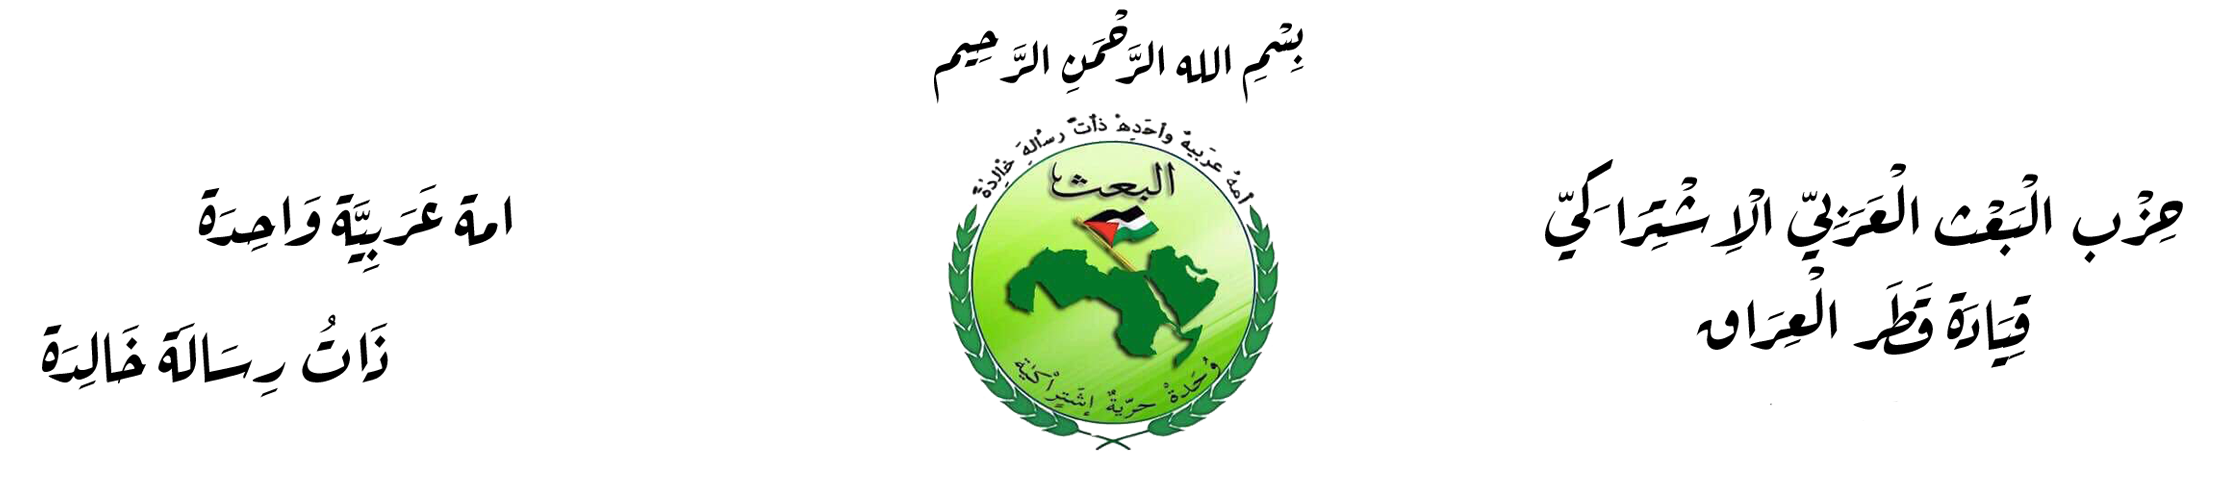 بيان في الذكرى الثامنة عشر لغزو العراق واحتلاله     مهم للاطلاع / البريد الجديد والوحيد للاتصال بالشبكة هو thiqar@thiqar.n IraqBaath2021